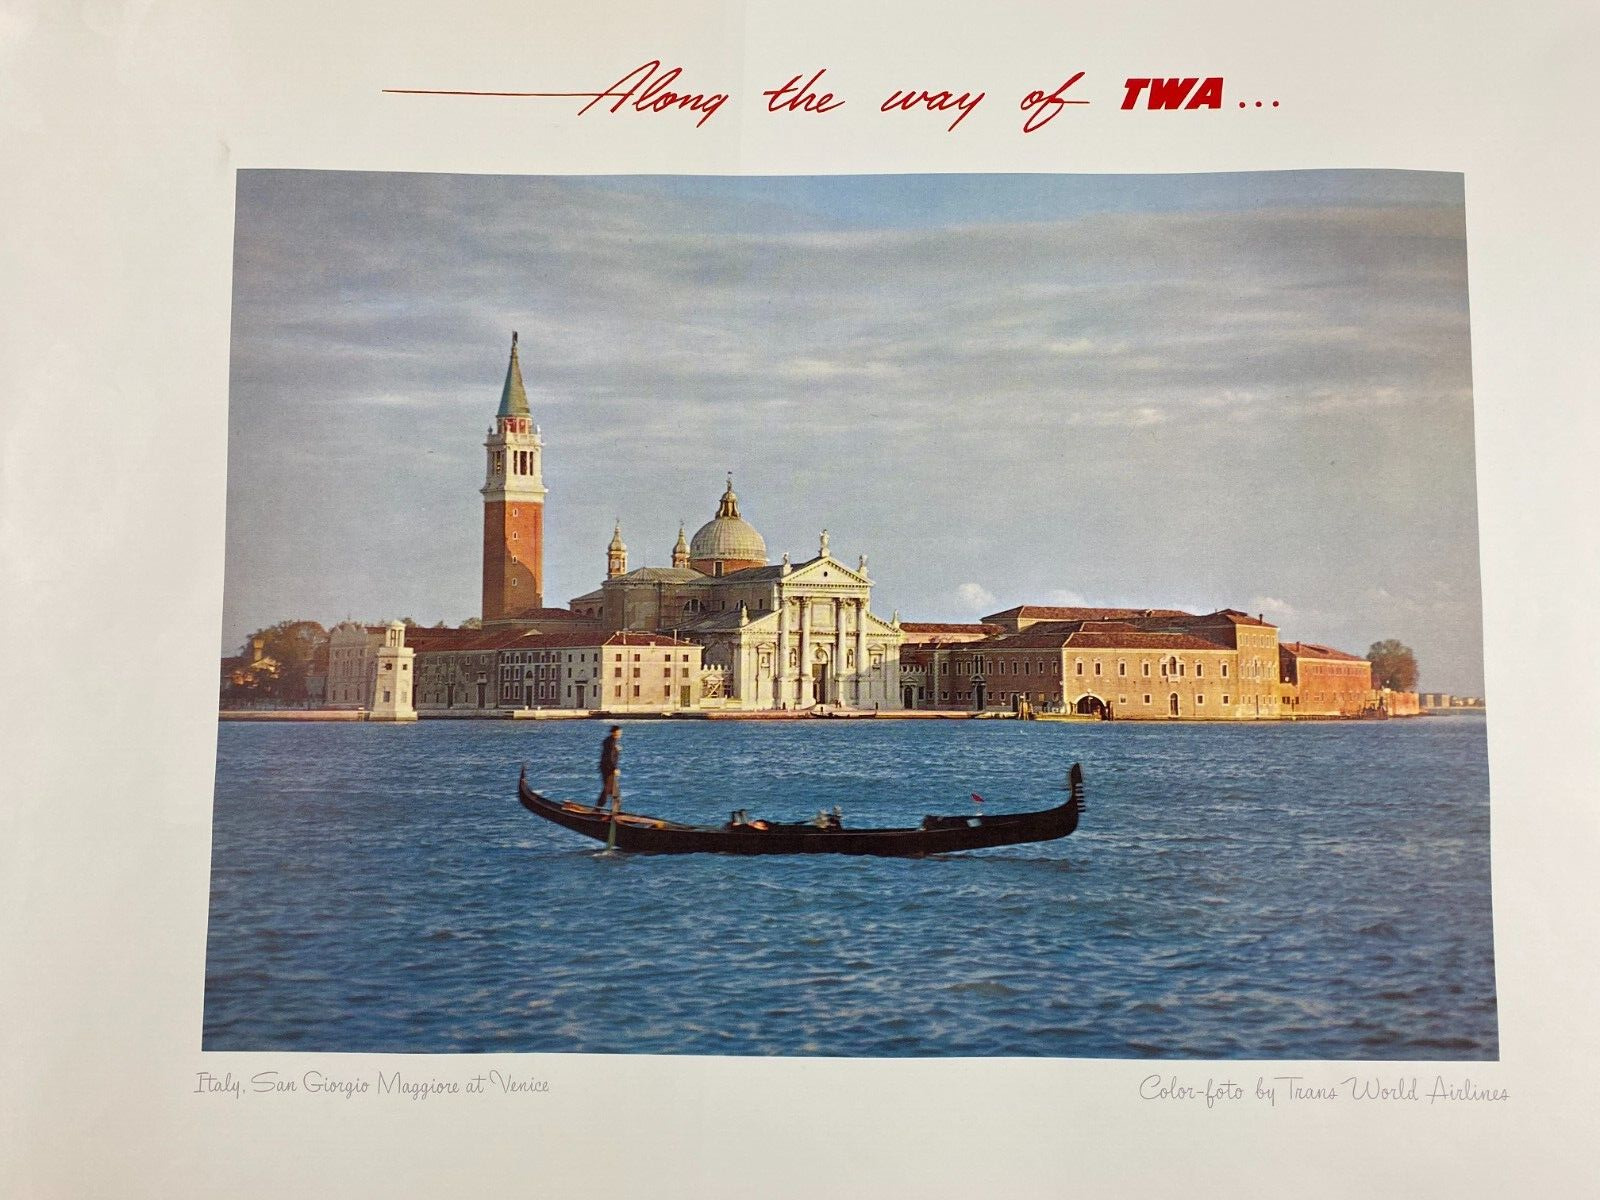 Along the Way of TWA Poster San Giorgio Maggiore at Venice Italy 22